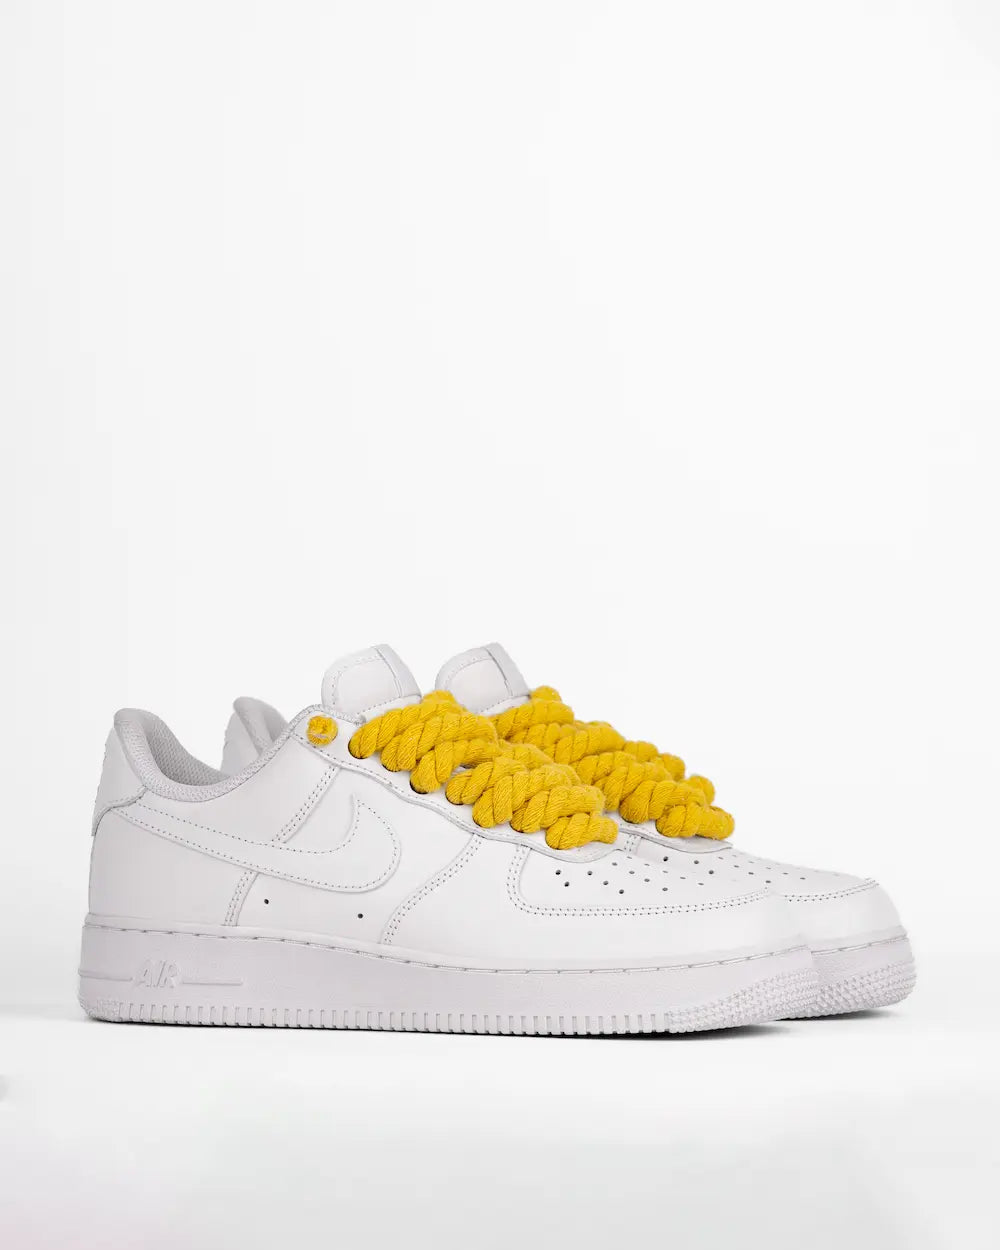 Nike Air Force 1 bianca personalizzata con lacci in corda gialli